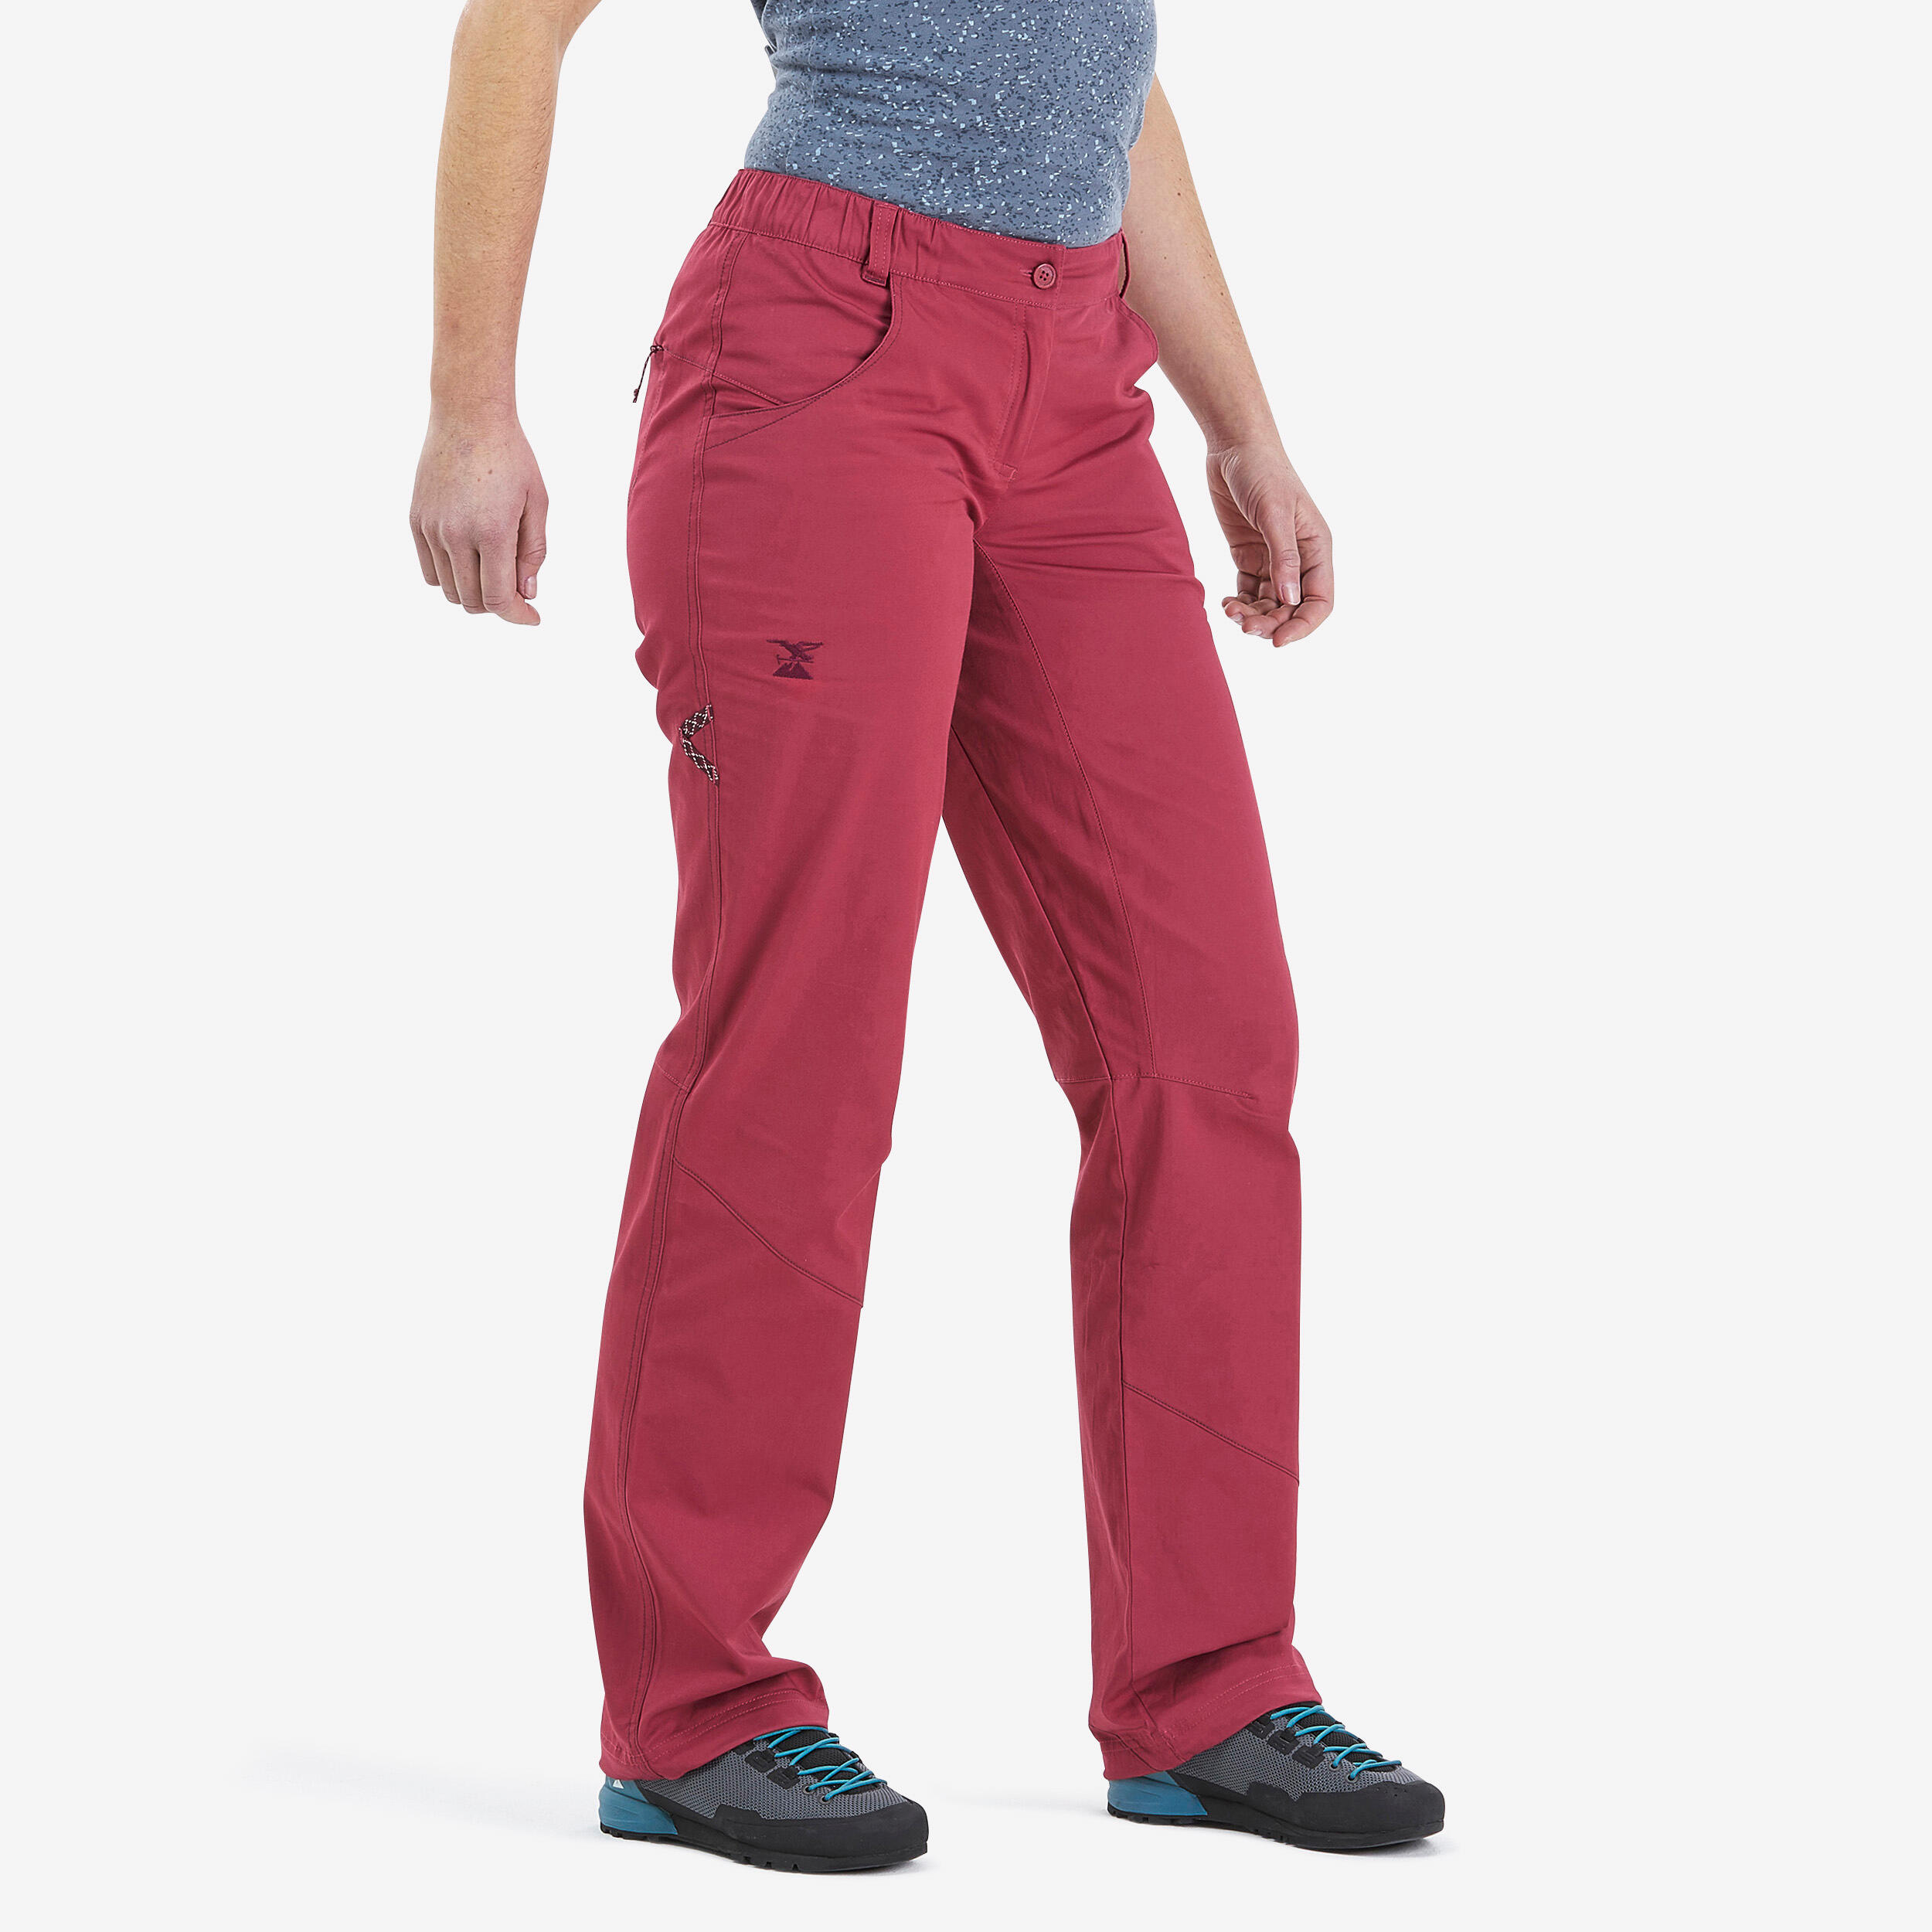 Karpos Rock Pant - Climbing trousers Women's | Free EU Delivery |  Bergfreunde.eu